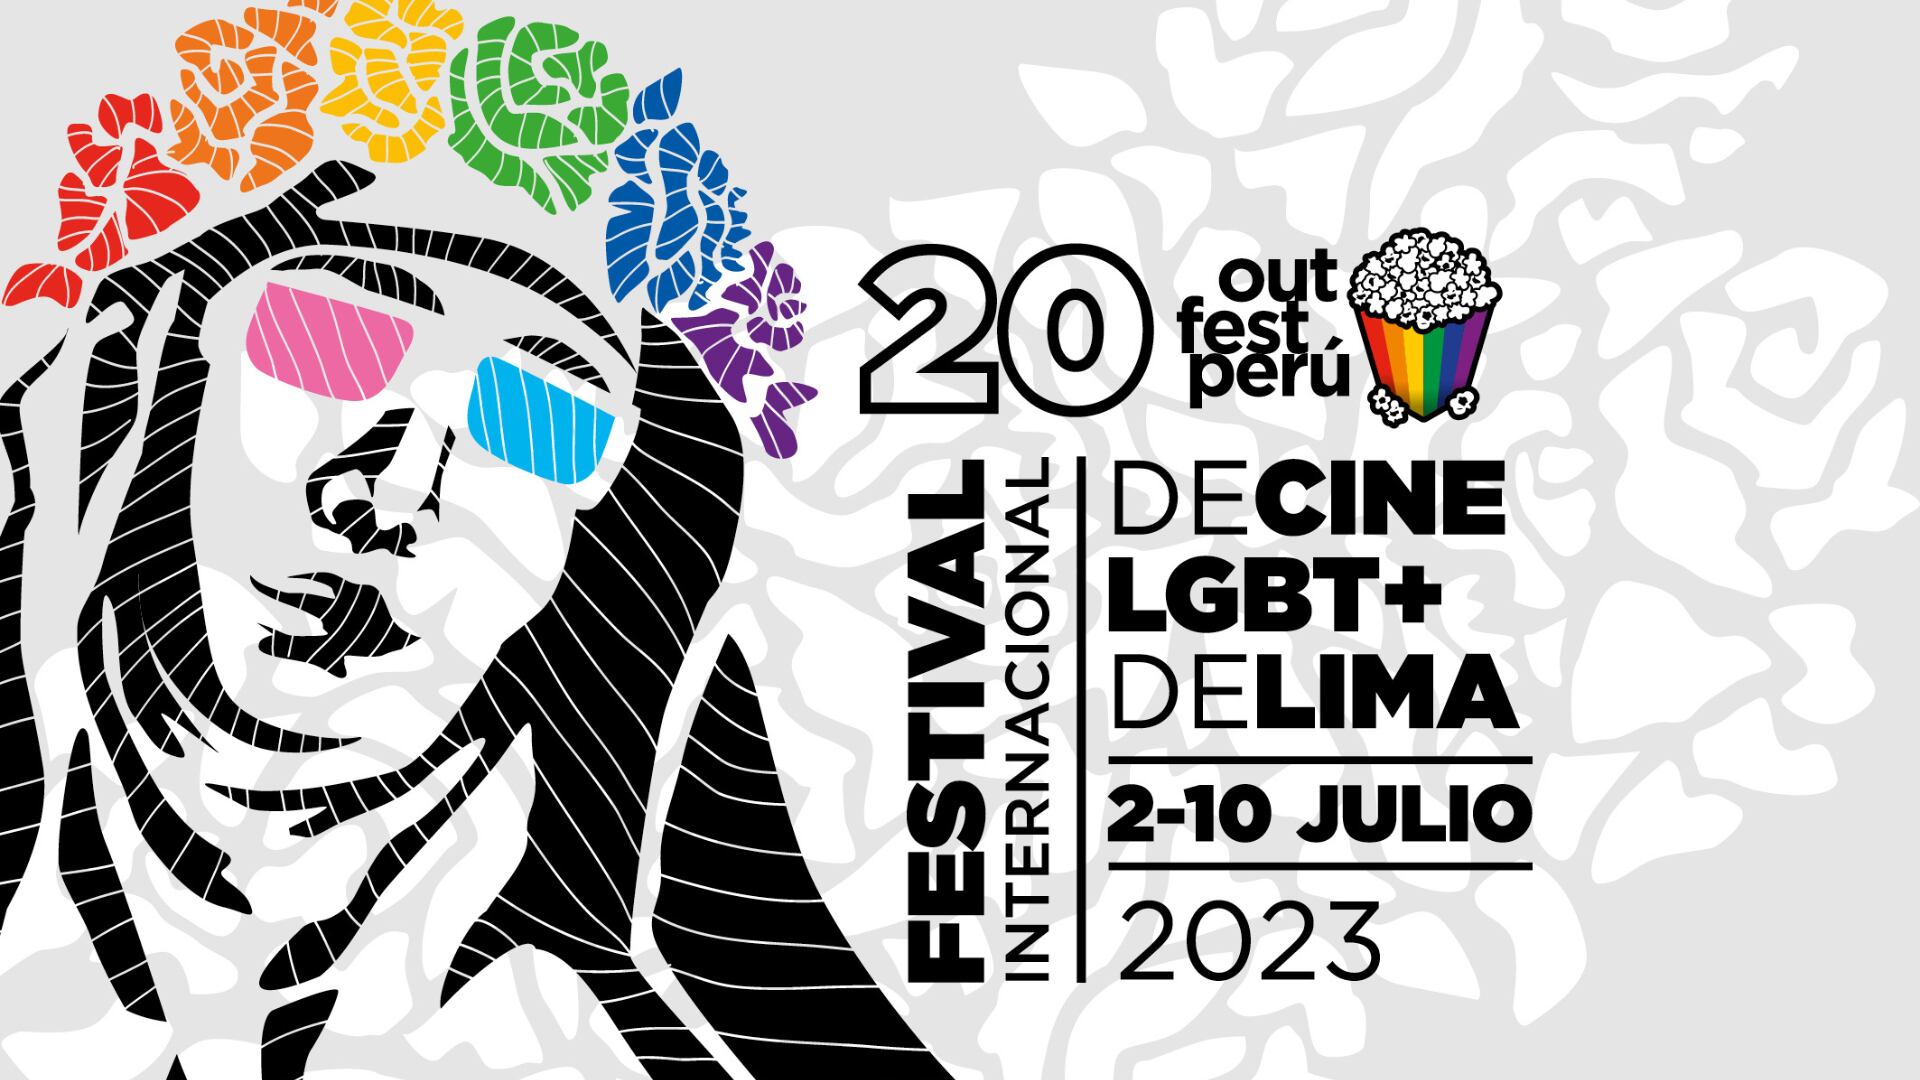 Afiche oficial del vigésimo 'Outfest Perú' que se realizará entre el 2 al 10 de julio. (Foto: Outfest Perú)